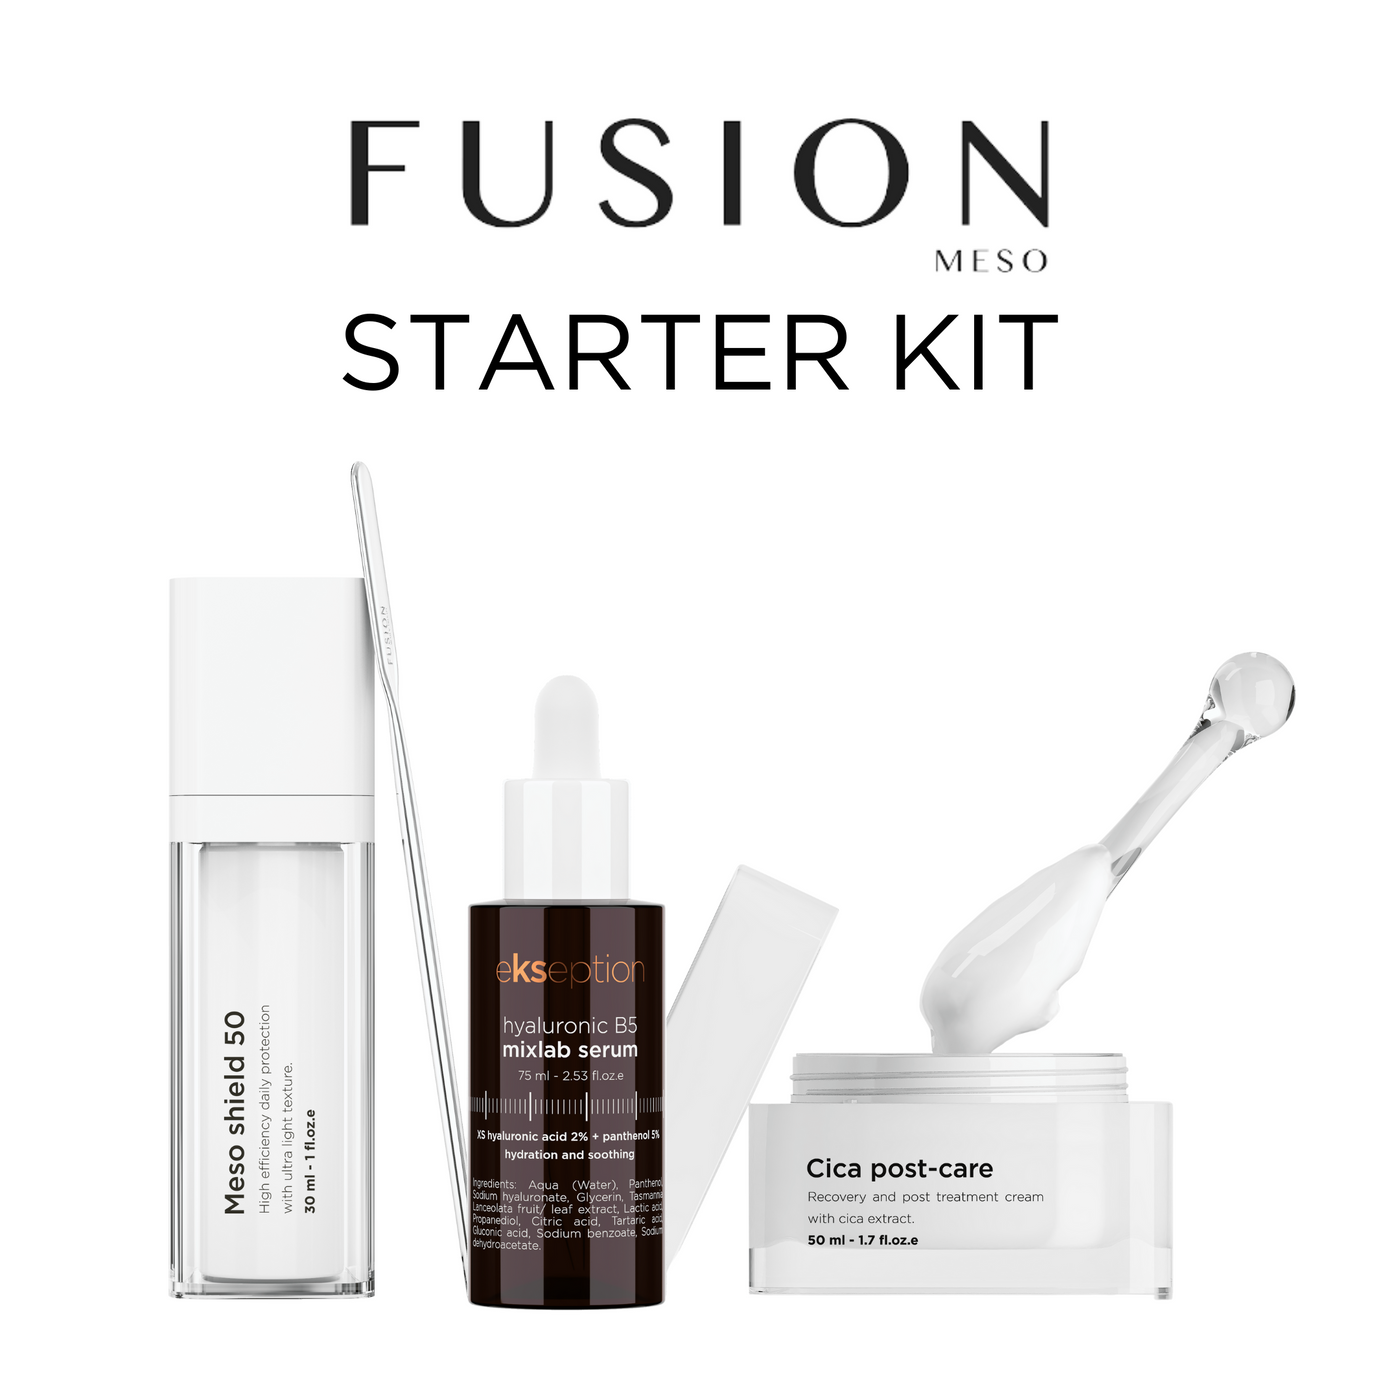 Fusion Kit